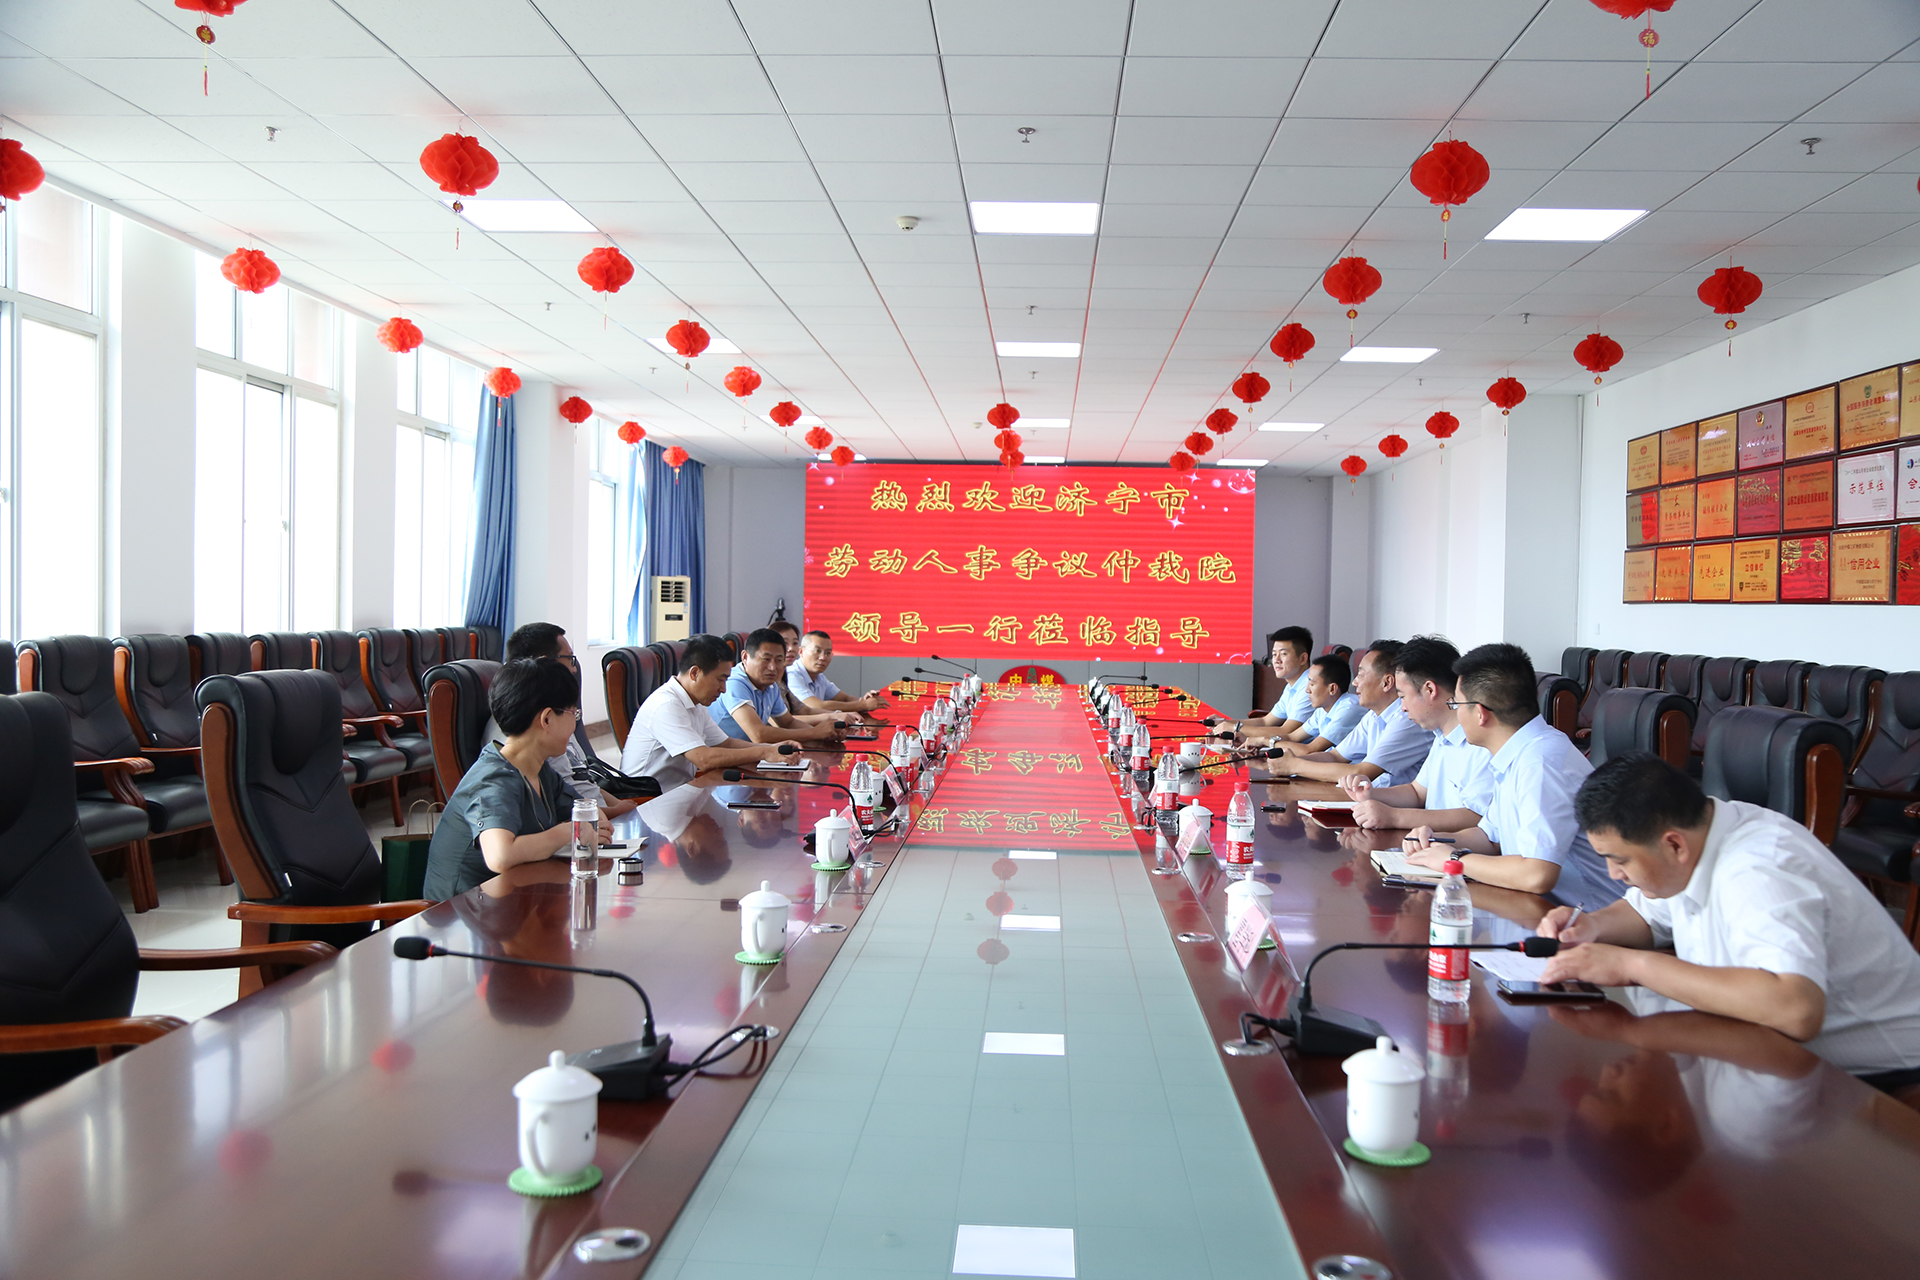 Сердечно приветствуем руководителей Цзининского института арбитража по трудовым и кадровым спорам, которые посетят China Coal Group